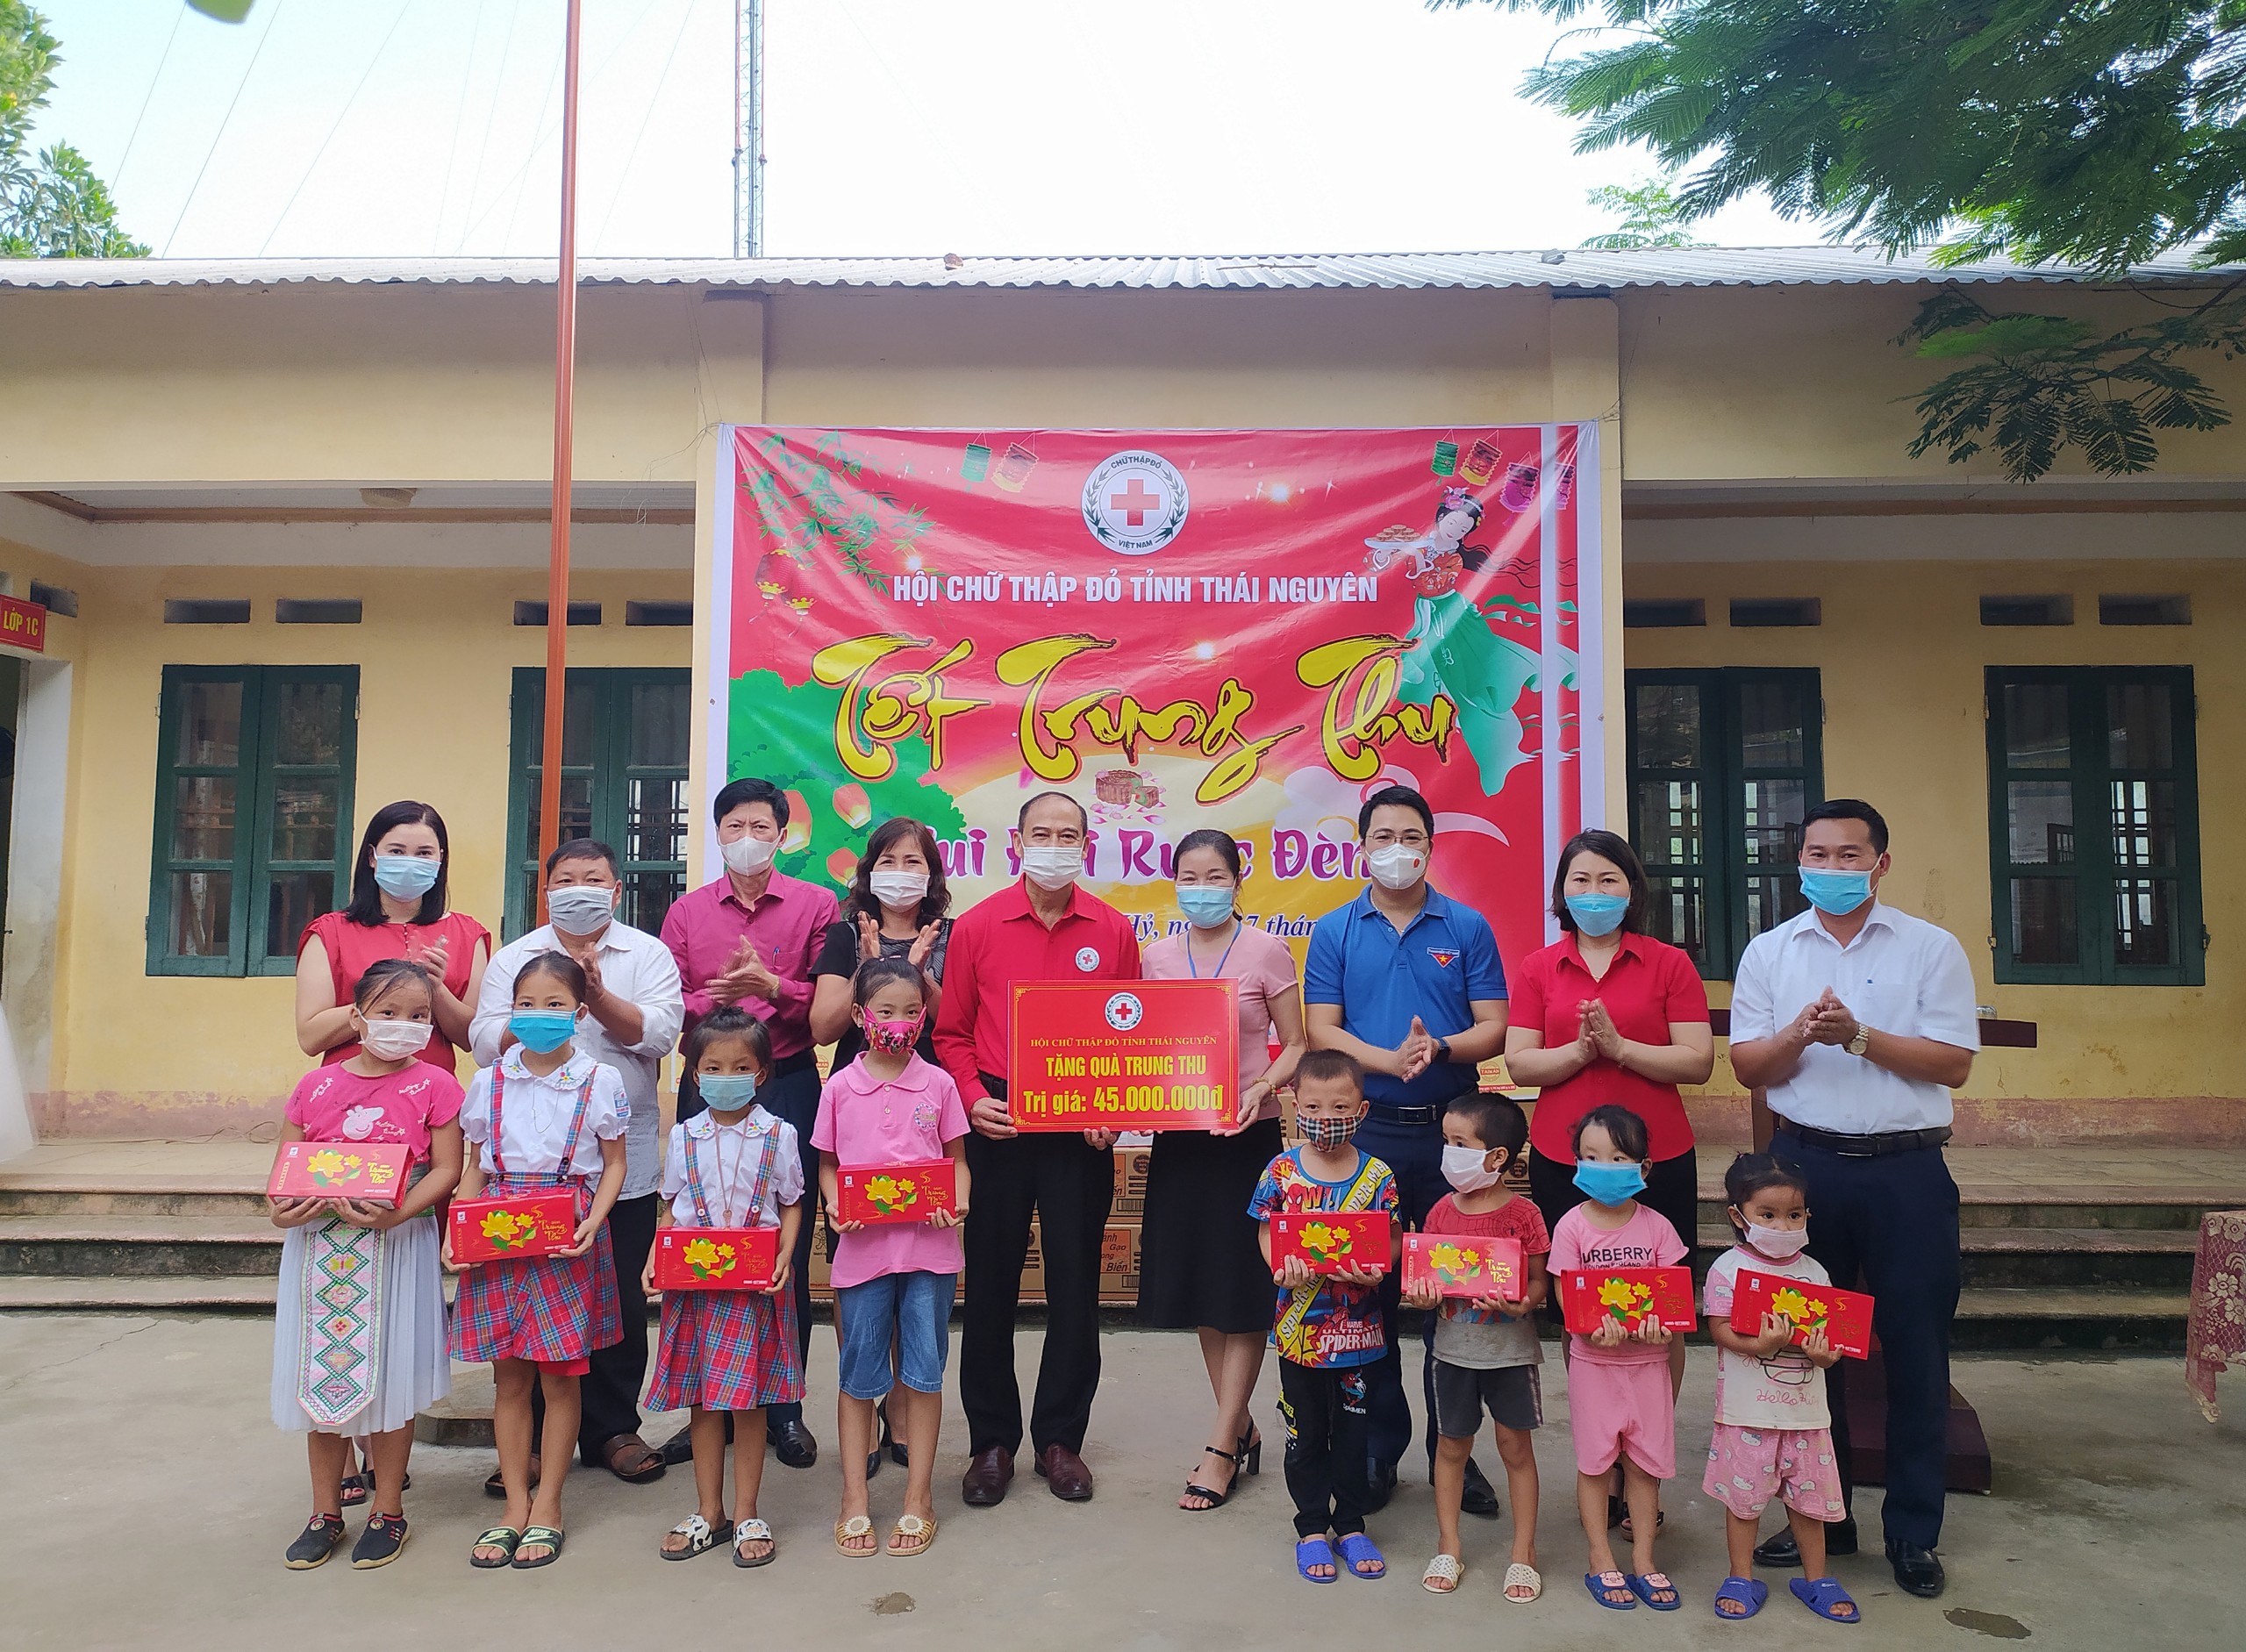 Thái Nguyên: “Tết Trung thu – Vui hội rước Đèn” đến với trẻ em  vùng dân tộc thiểu số Trung Sơn